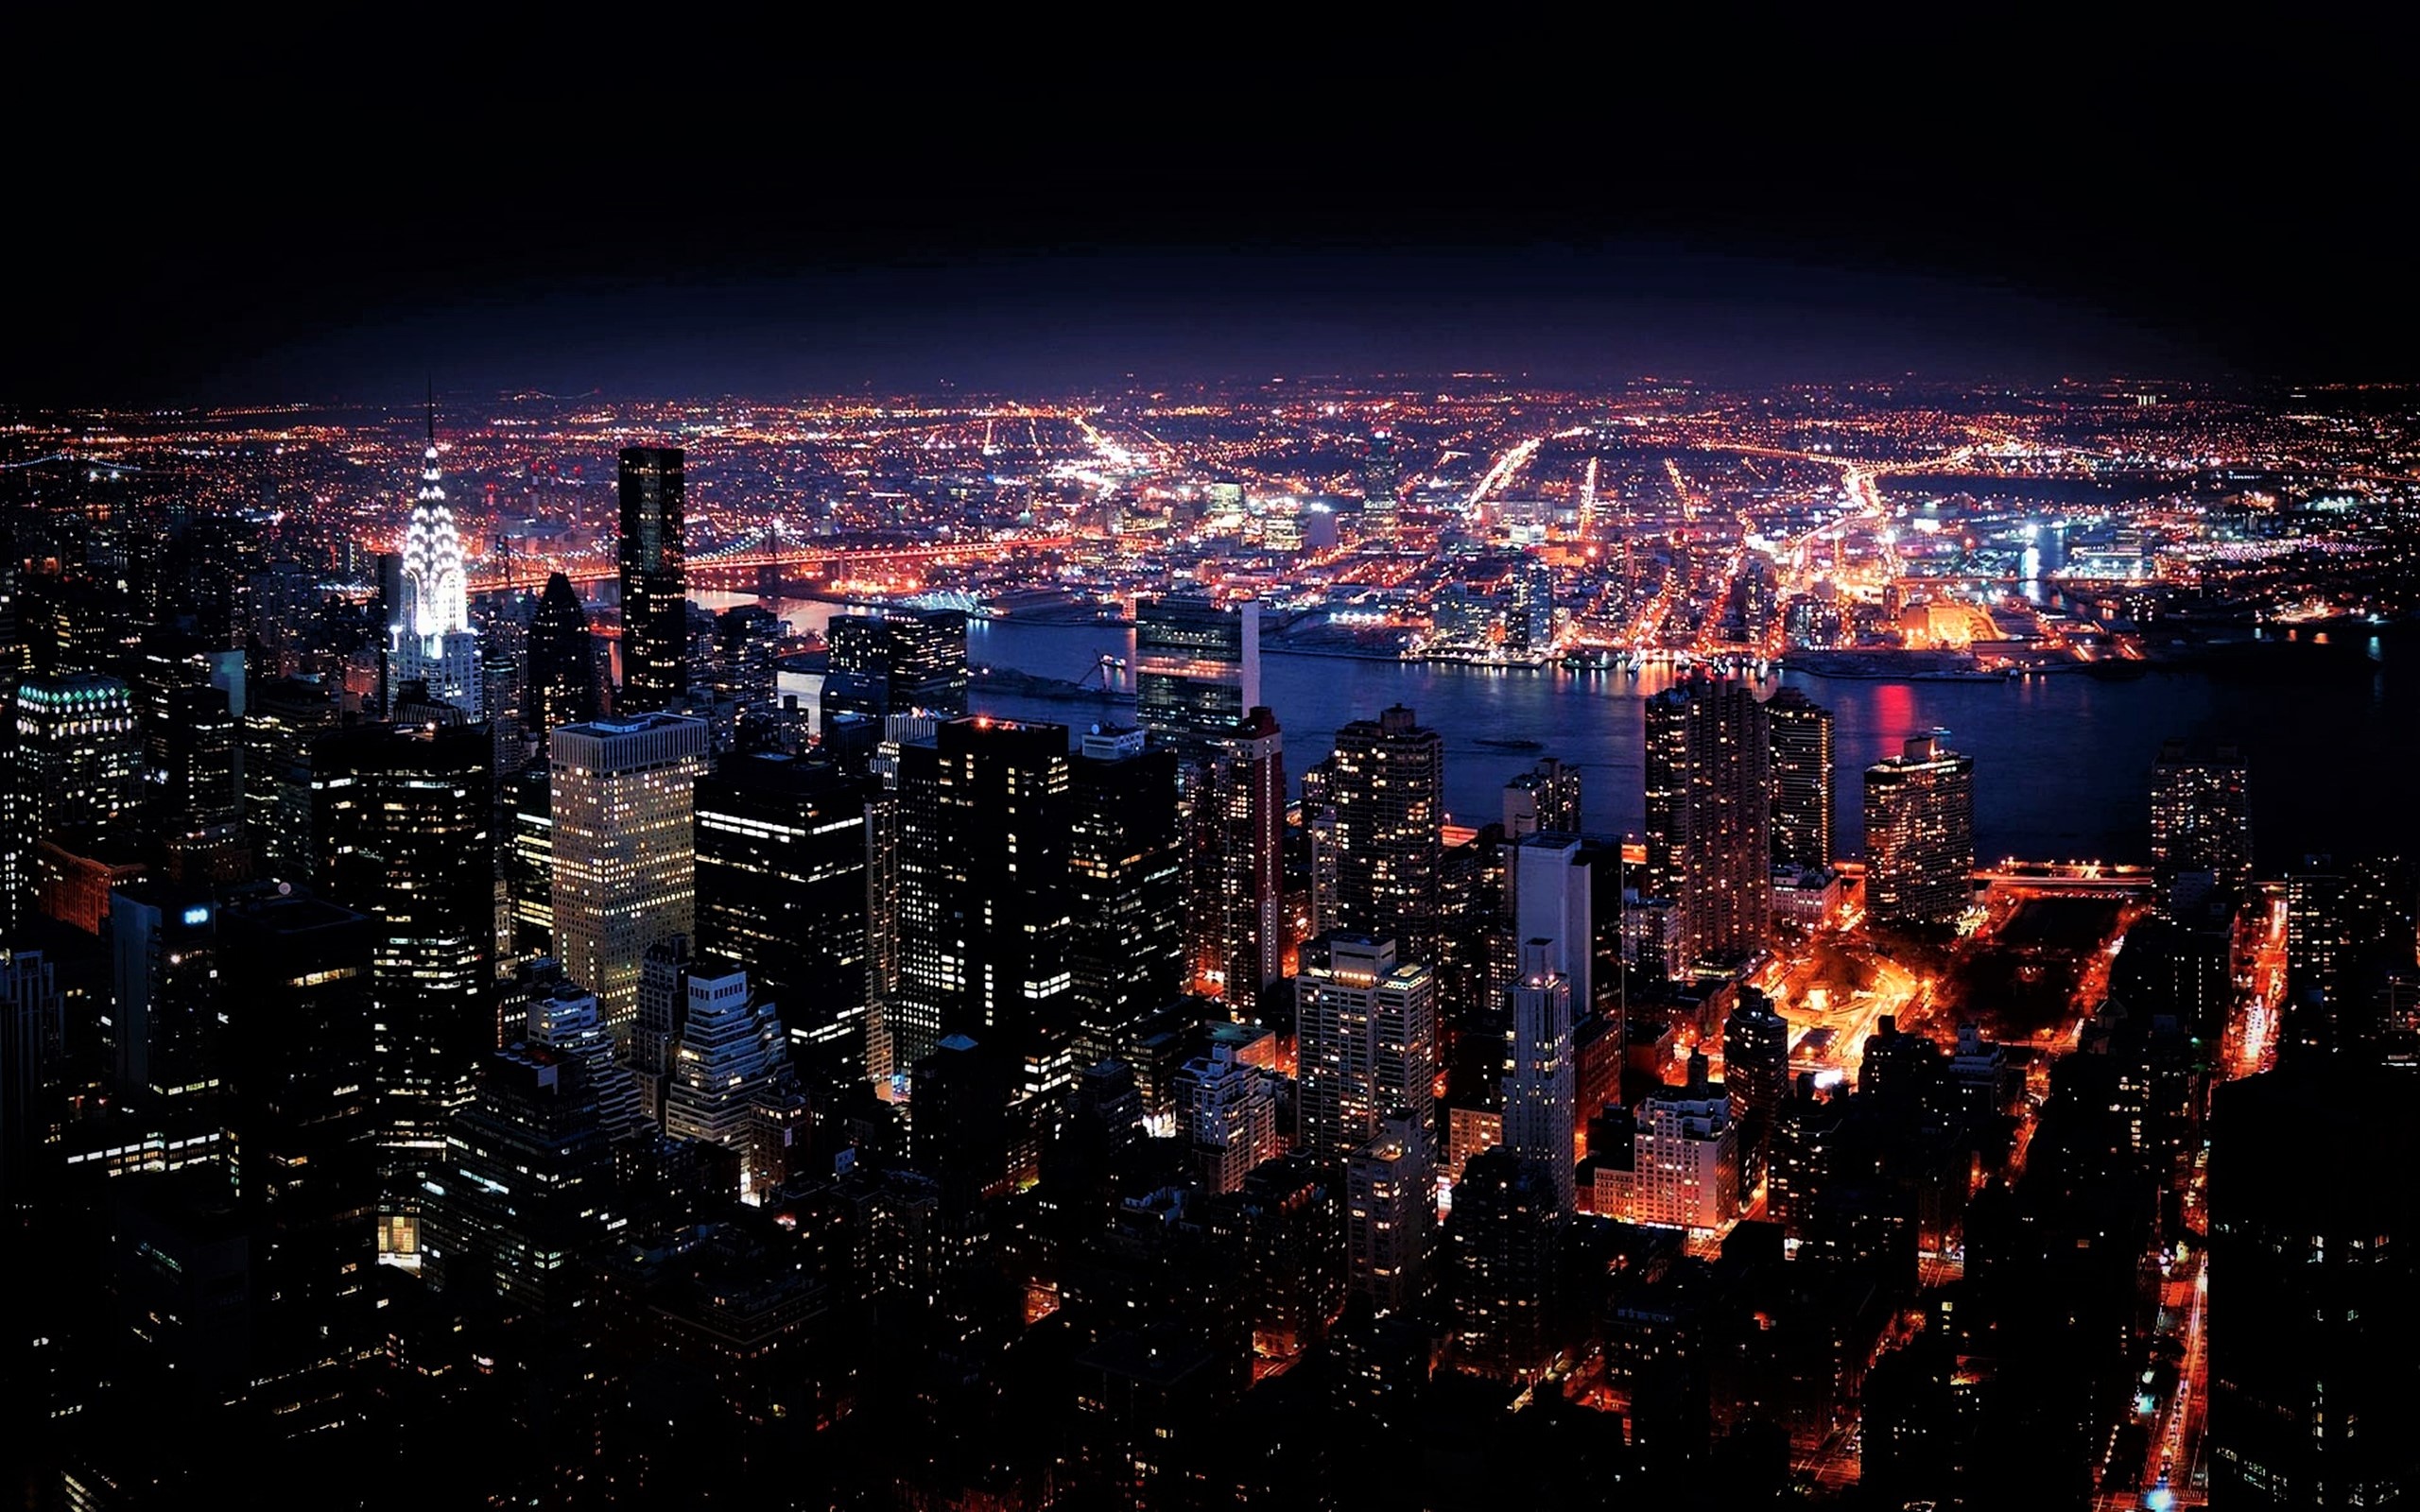 new york city at night wallpaper desktop